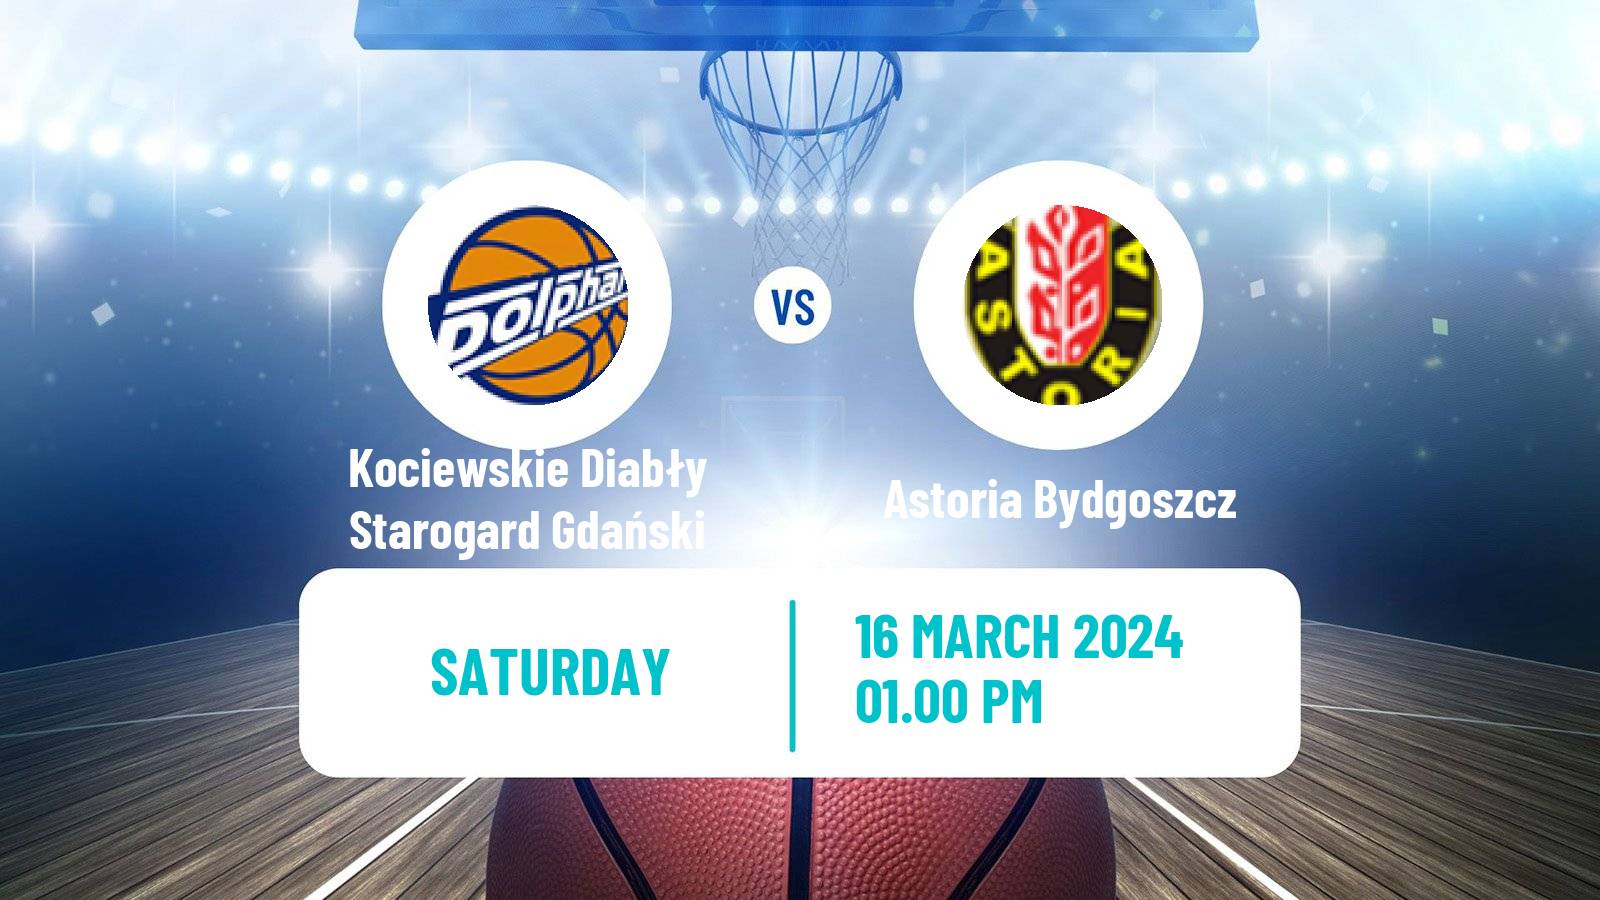 Basketball Polish 1 Liga Basketball Kociewskie Diabły Starogard Gdański - Astoria Bydgoszcz